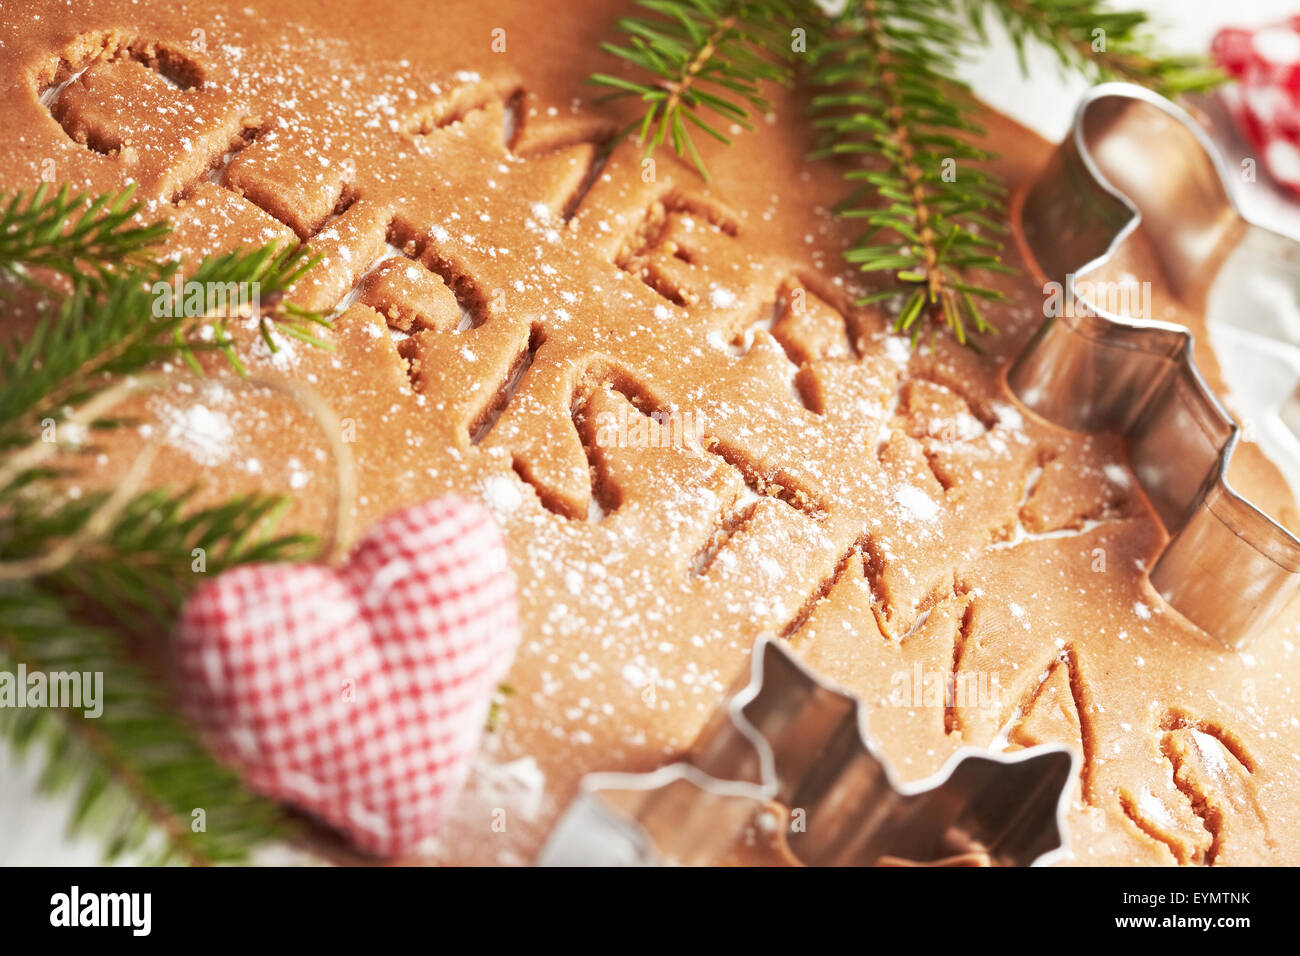 Baking Christmas cookies Stock Photo